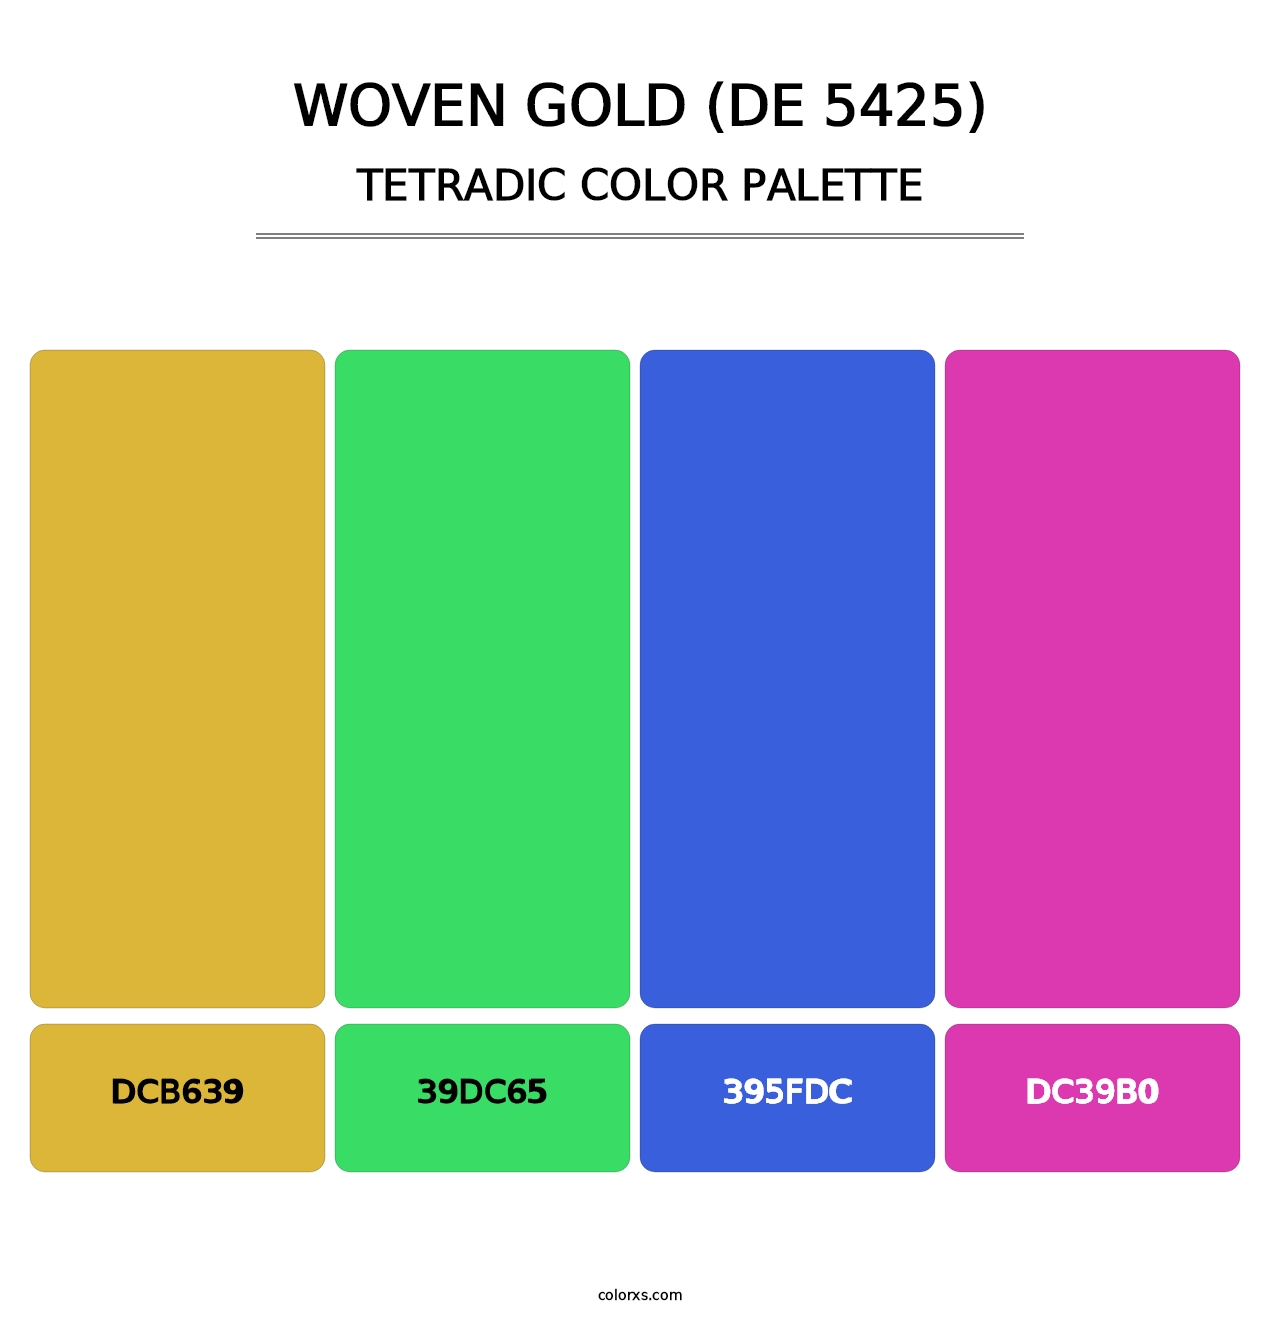 Woven Gold (DE 5425) - Tetradic Color Palette